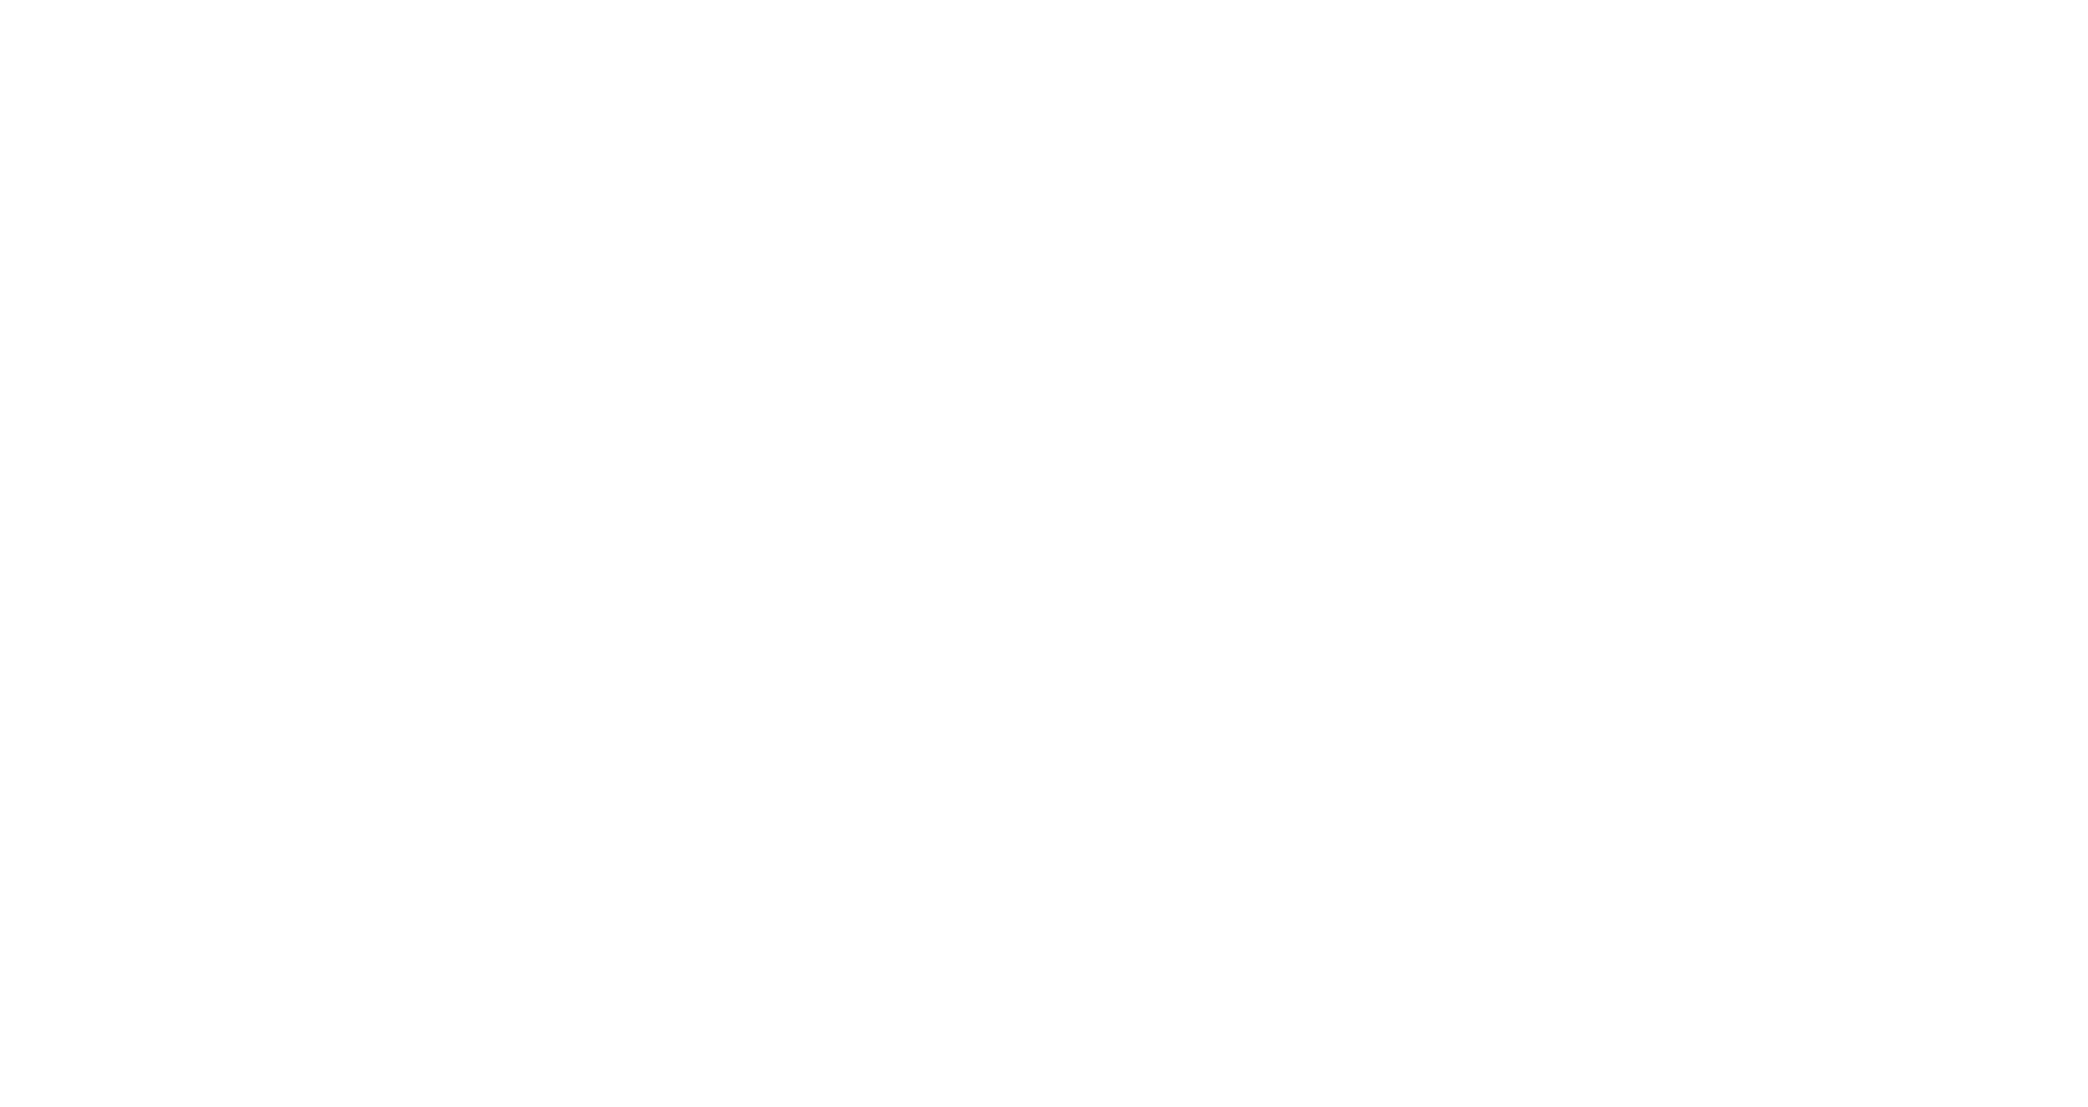 IndieFEST Film Awards | Winner Award of Merit